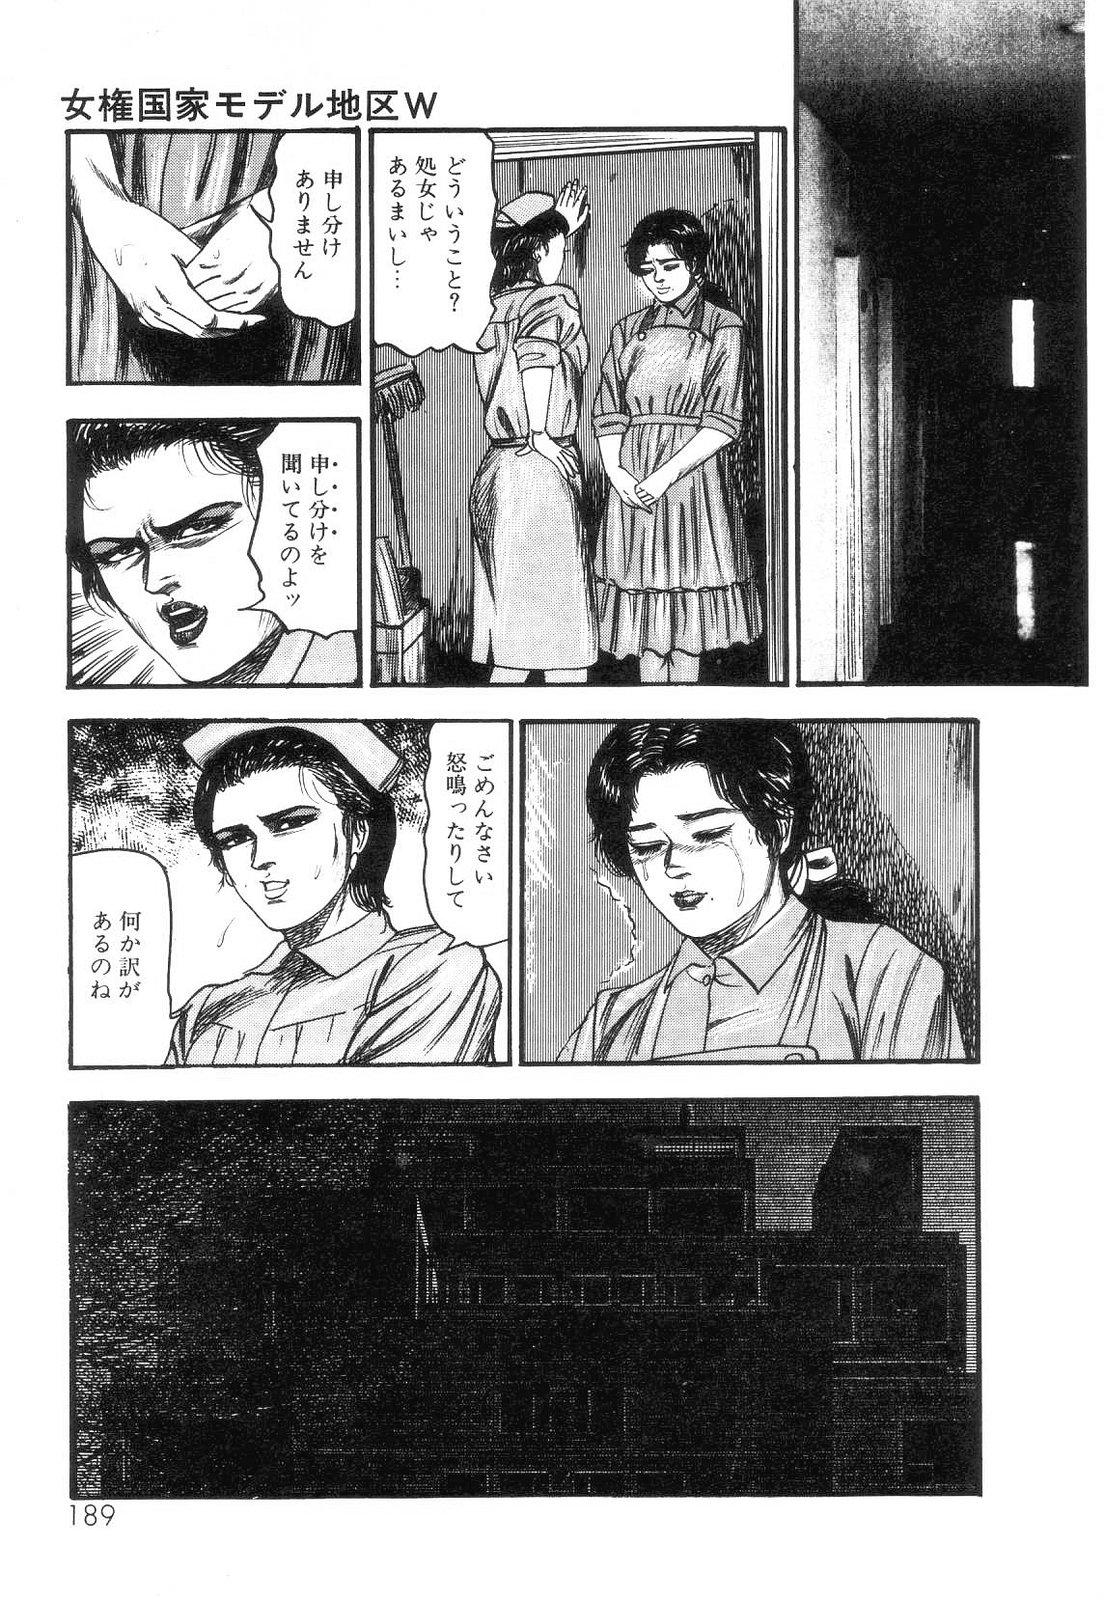 Shiro no Mokushiroku Vol. 2 - Shion Ryoujoku no Shou 190